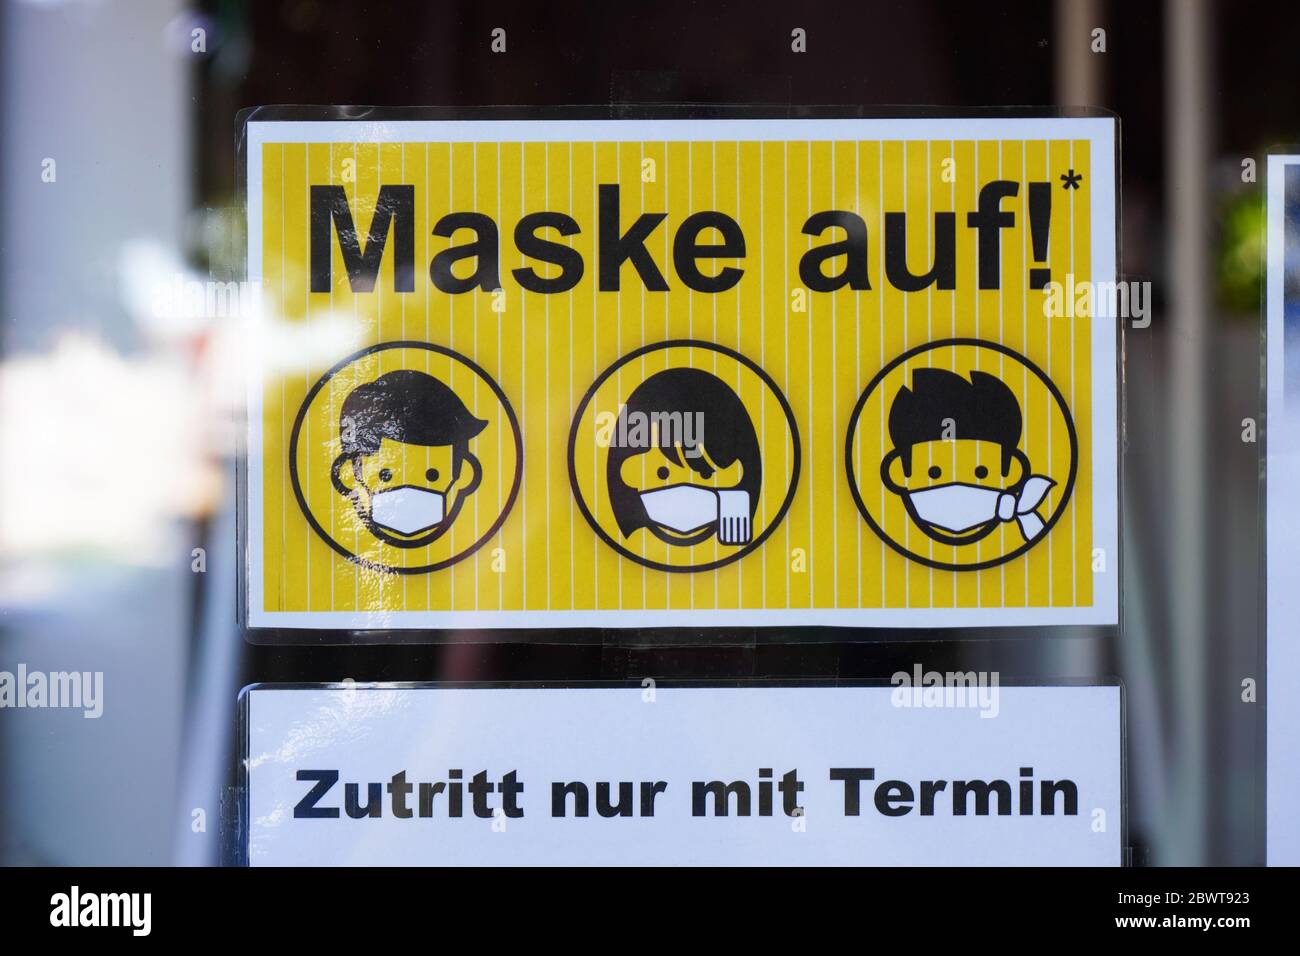 Hanovre, Allemagne - 1 juin 2020 : le panneau en allemand sur la porte d'entrée du salon de tatouage indique que le masque facial est obligatoire et que l'entrée est réservée sur rendez-vous. Banque D'Images